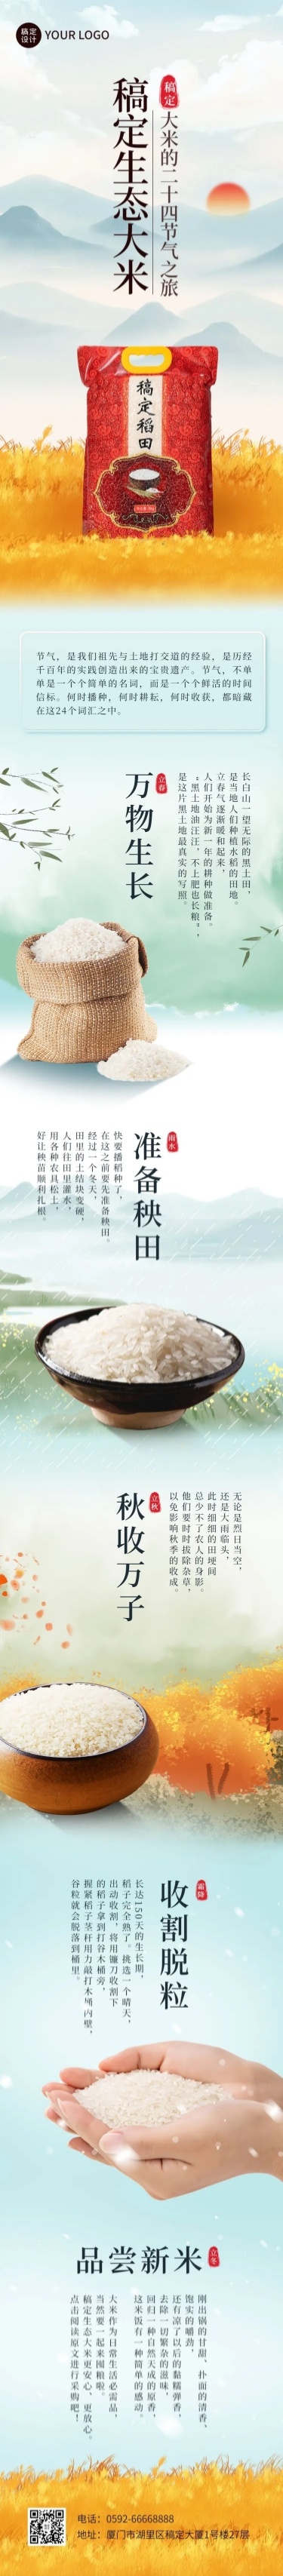 餐饮美食大米产品展示介绍促销文章长图